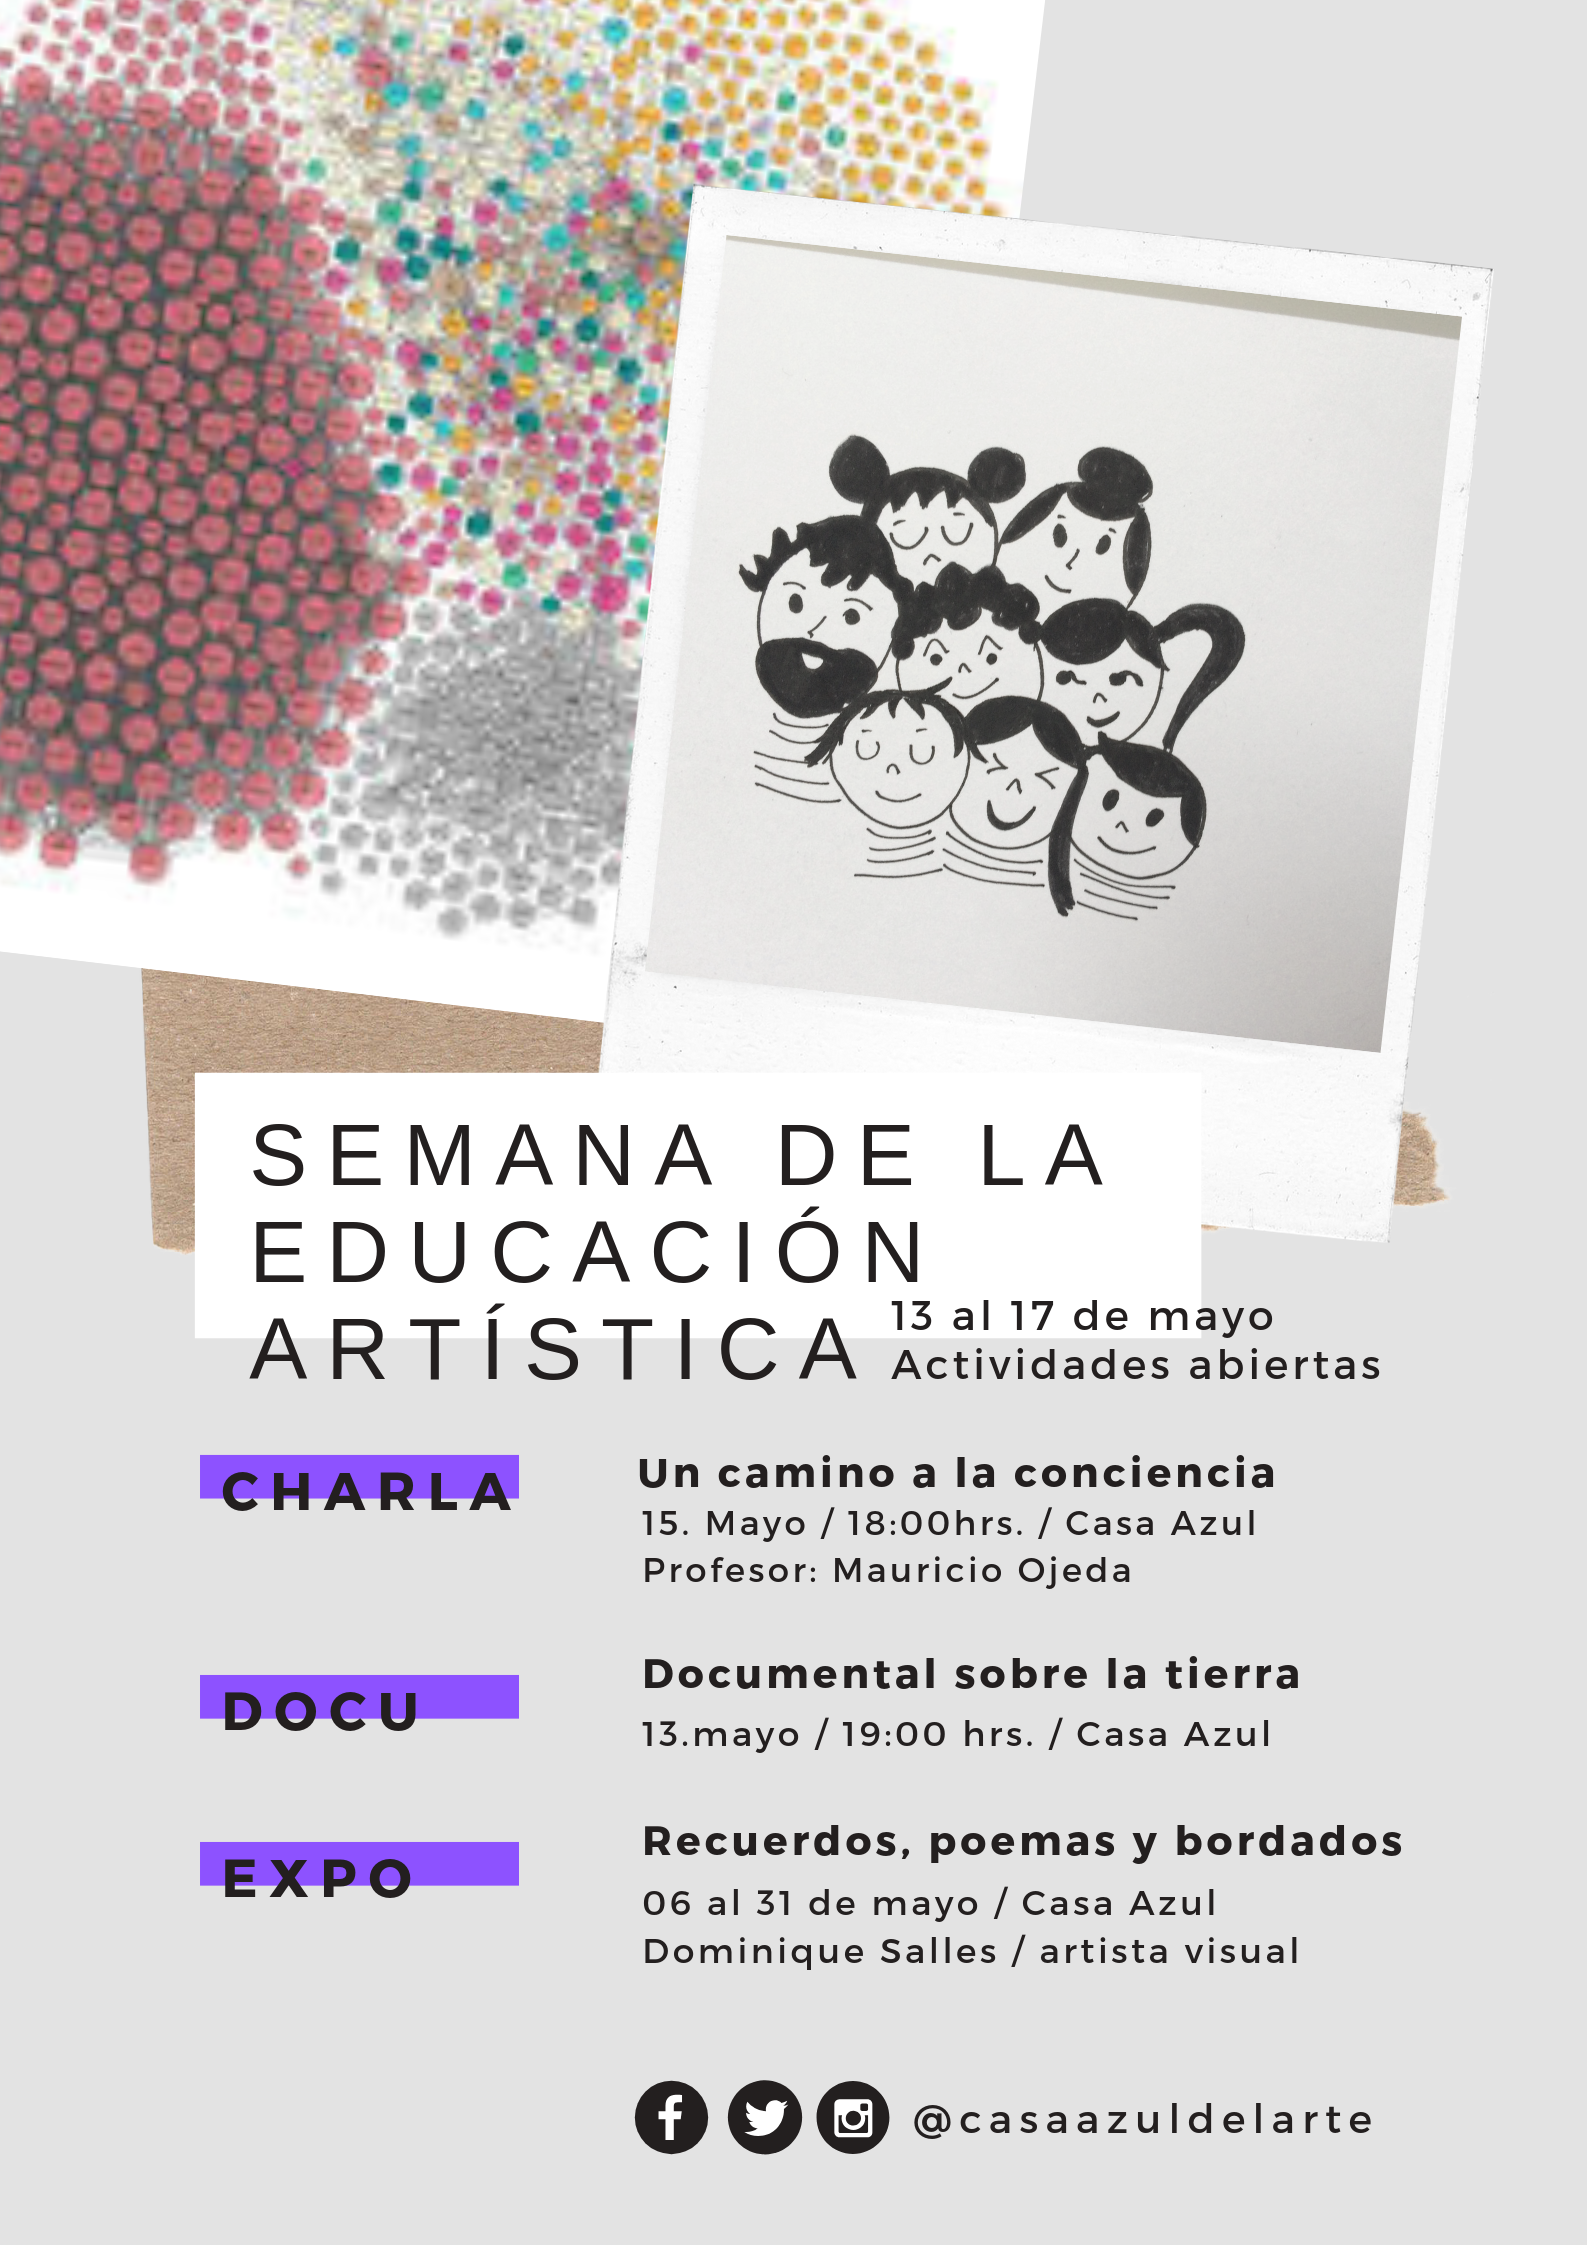 Casa Azul del Arte de Punta Arenas organiza Semana de la Educación Artística